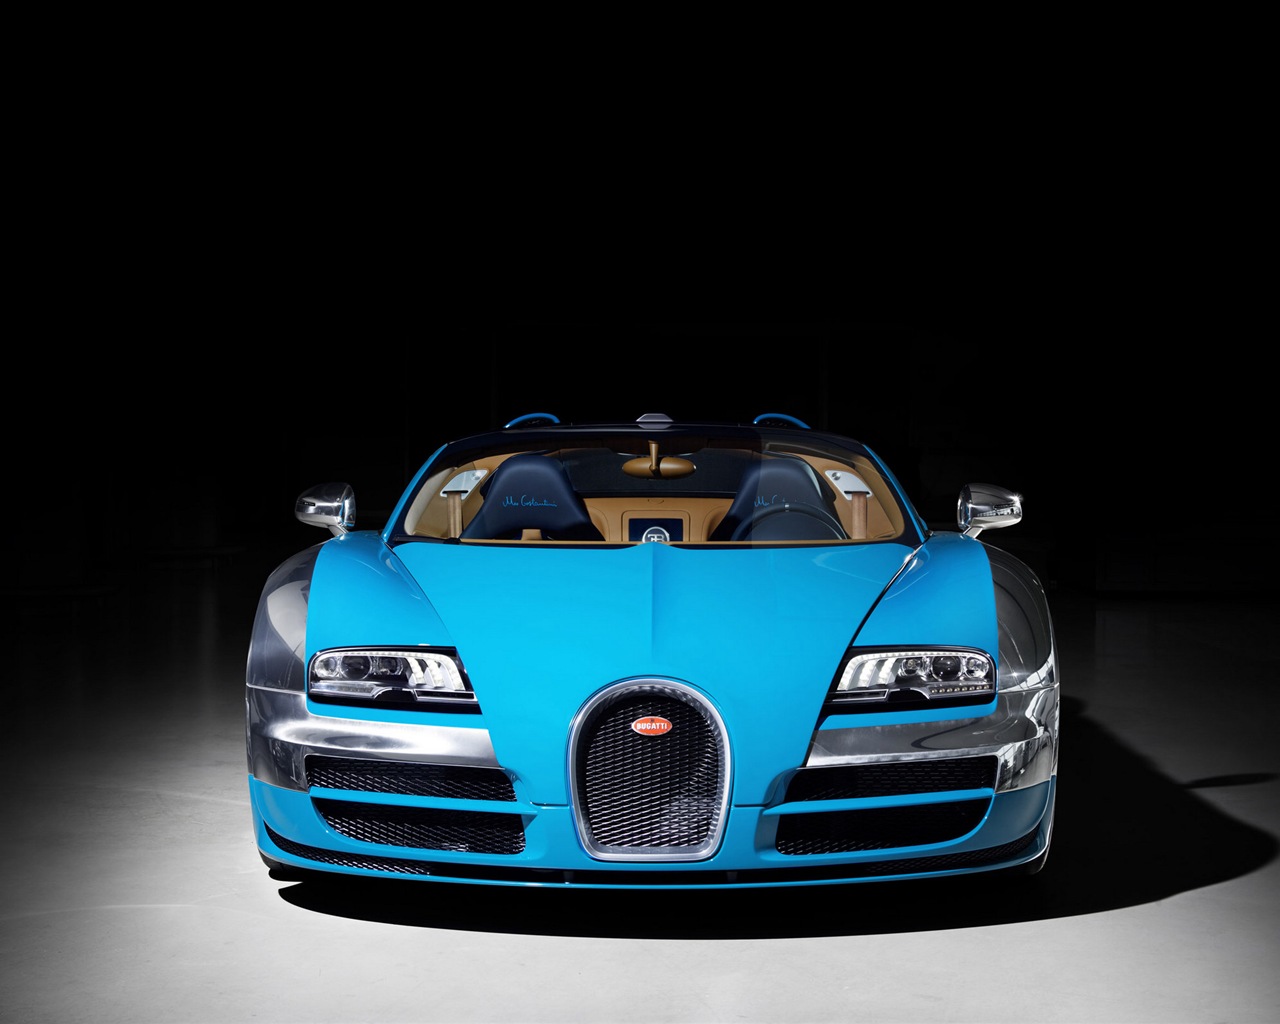 2013 Bugatti Veyron 16.4 Grand Sport Vitesse supercar fondos de pantalla de alta definición #2 - 1280x1024